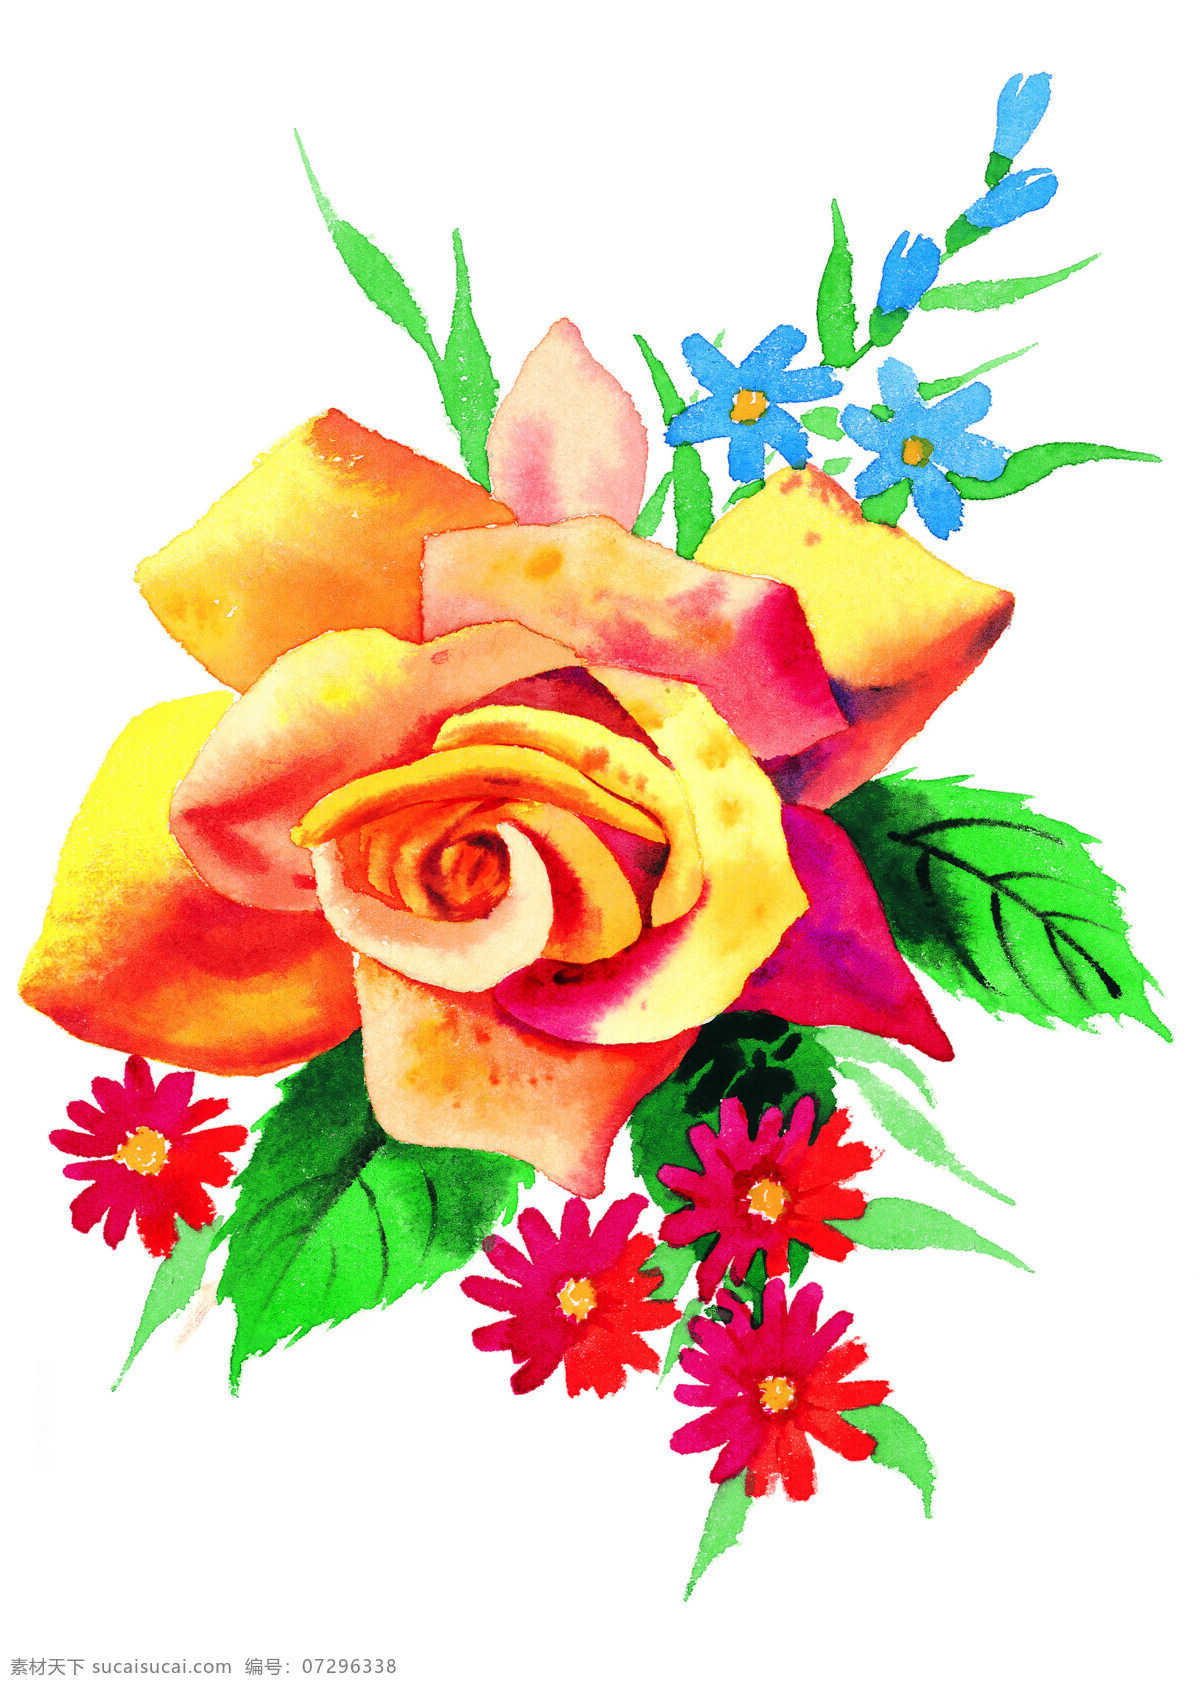 高清晰 手绘 黄 玫瑰 黄玫瑰2 设计素材 花草图案 植物插图 书画美术 白色